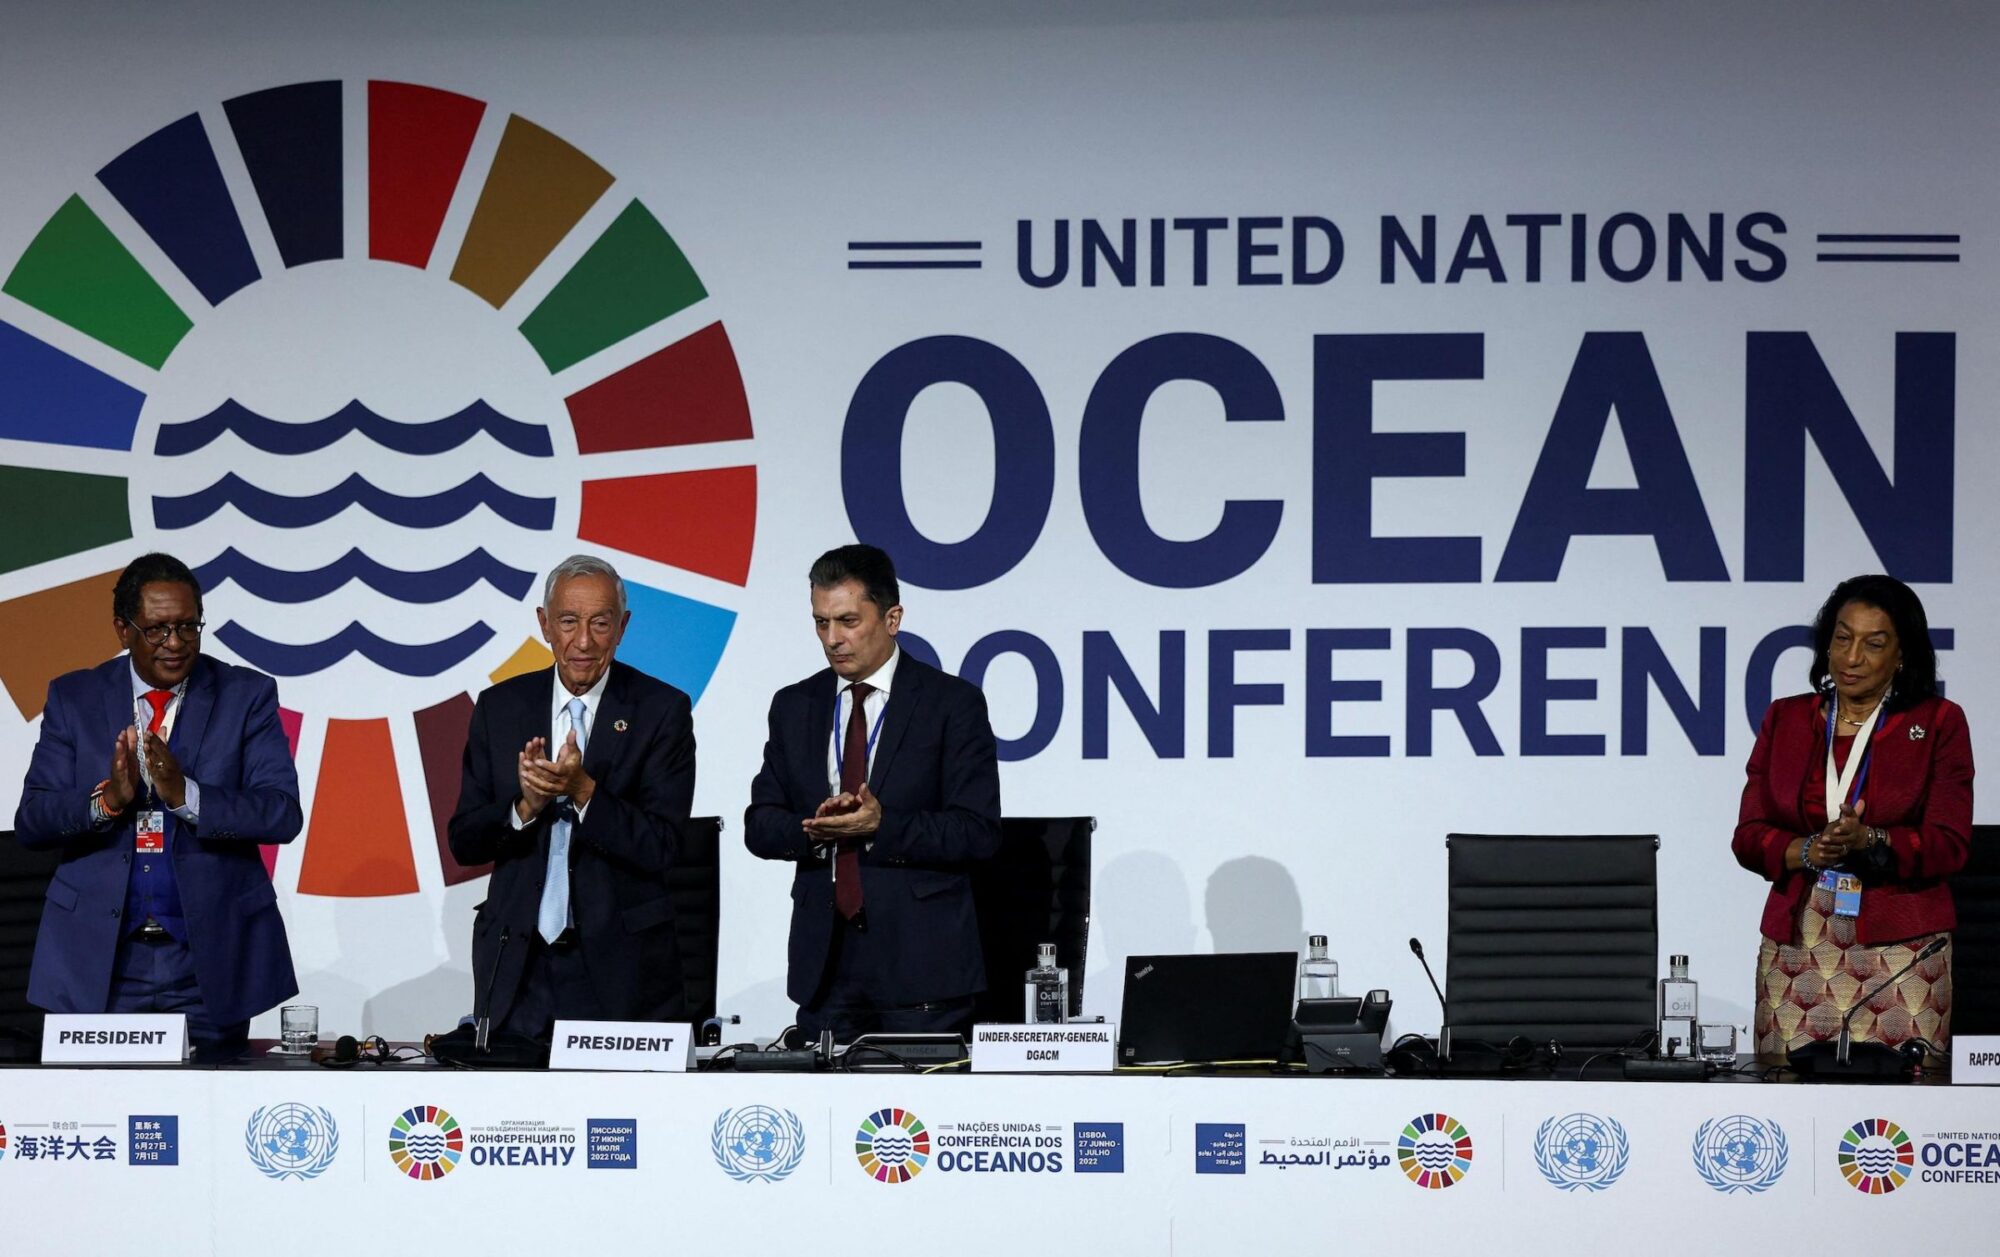 conferencia oceanos onu crise climatica aquecimento biodiversidade